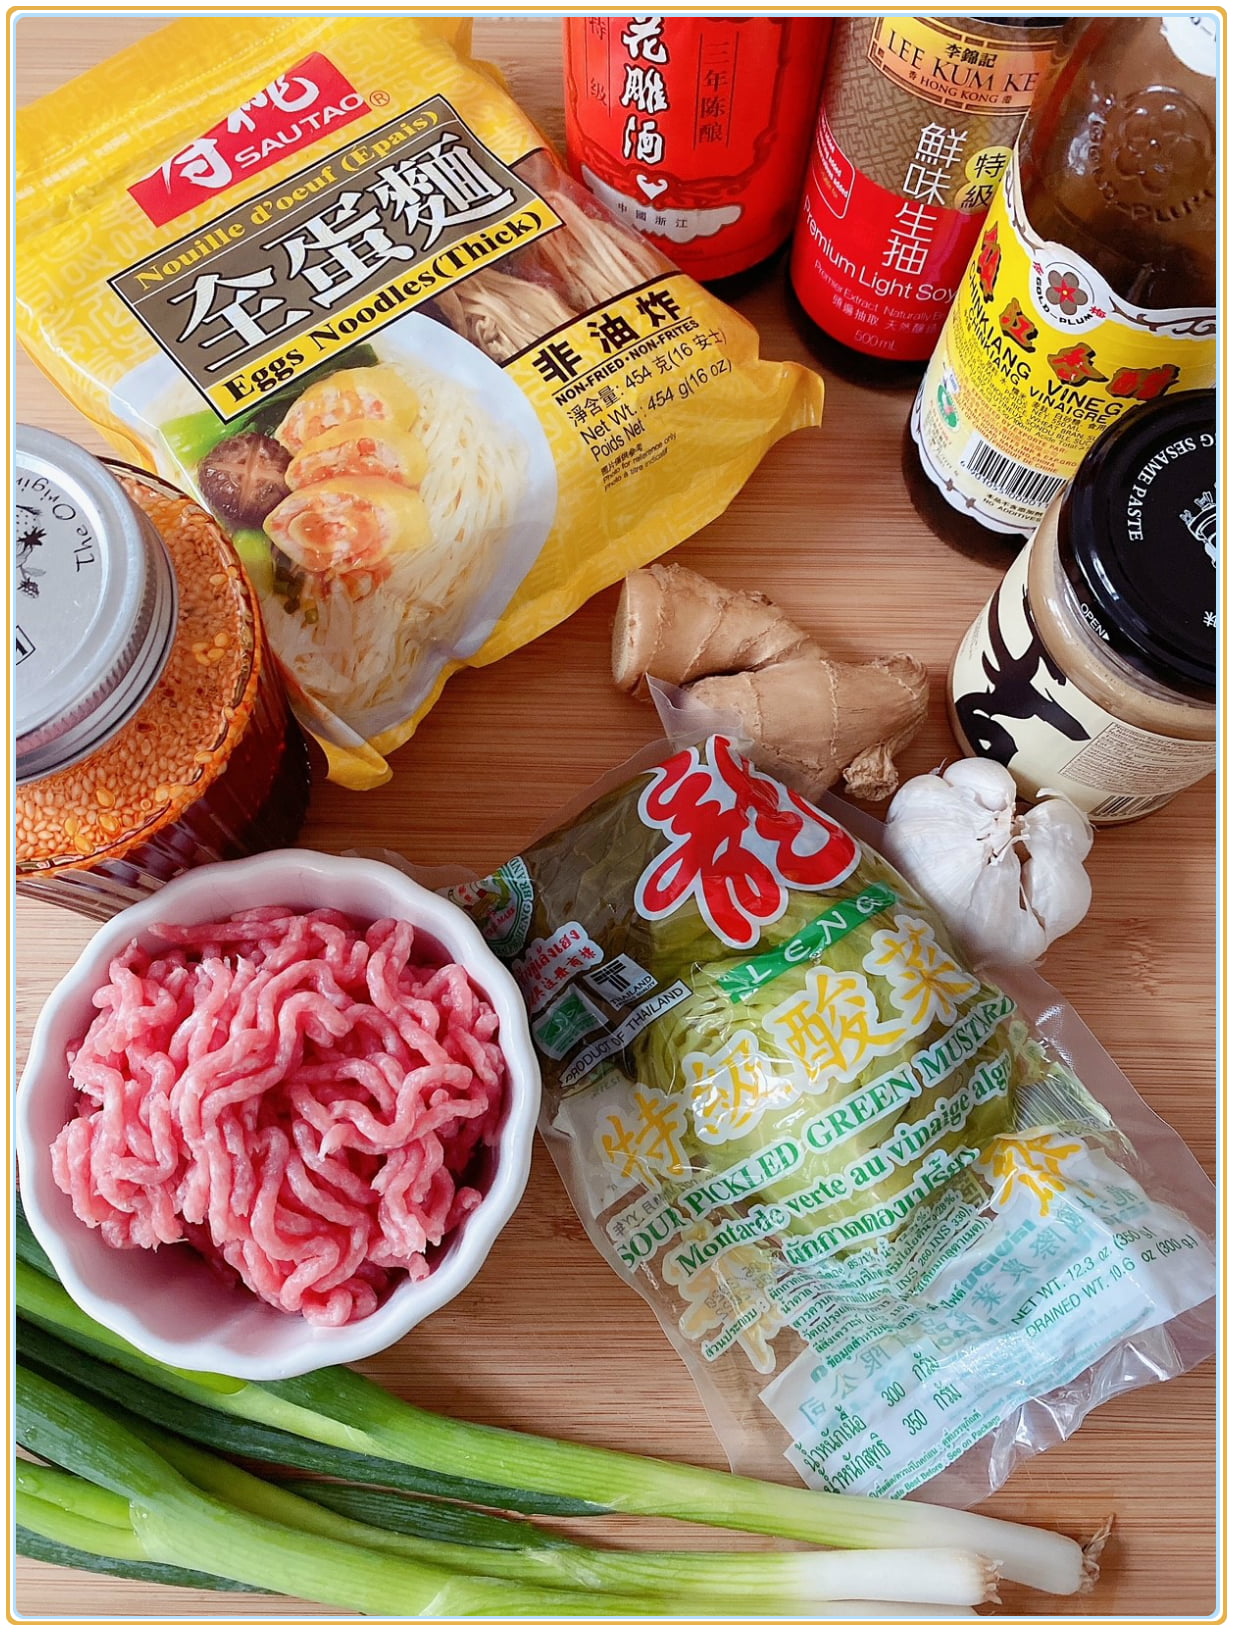 Ingredients for Sichuan Dan Dan noodles